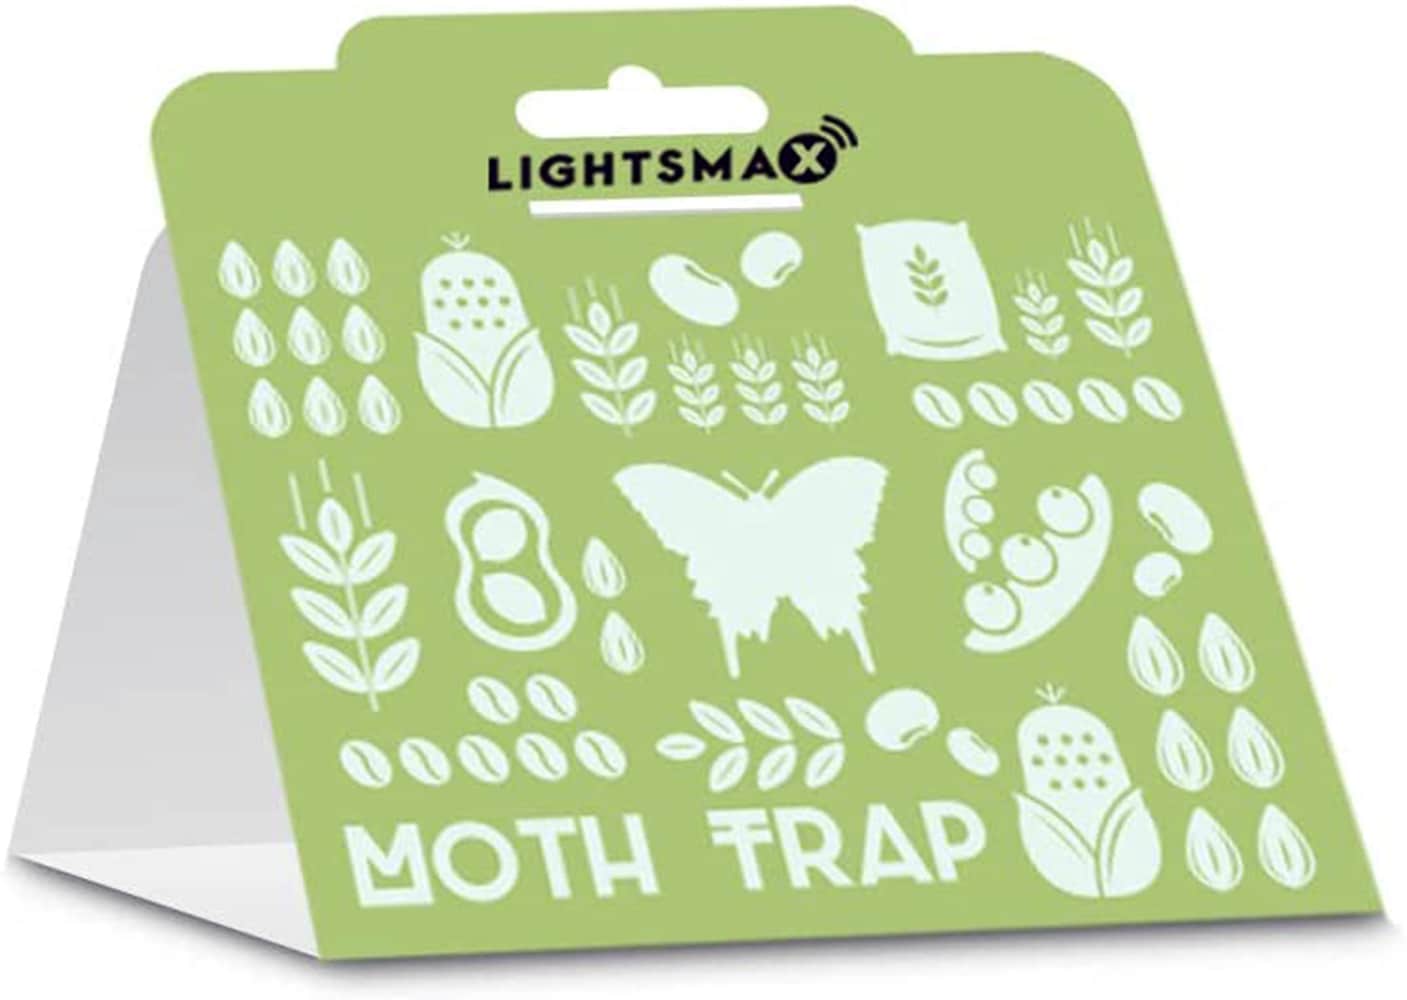 Clothes Moth Trap - 2-16 Traps